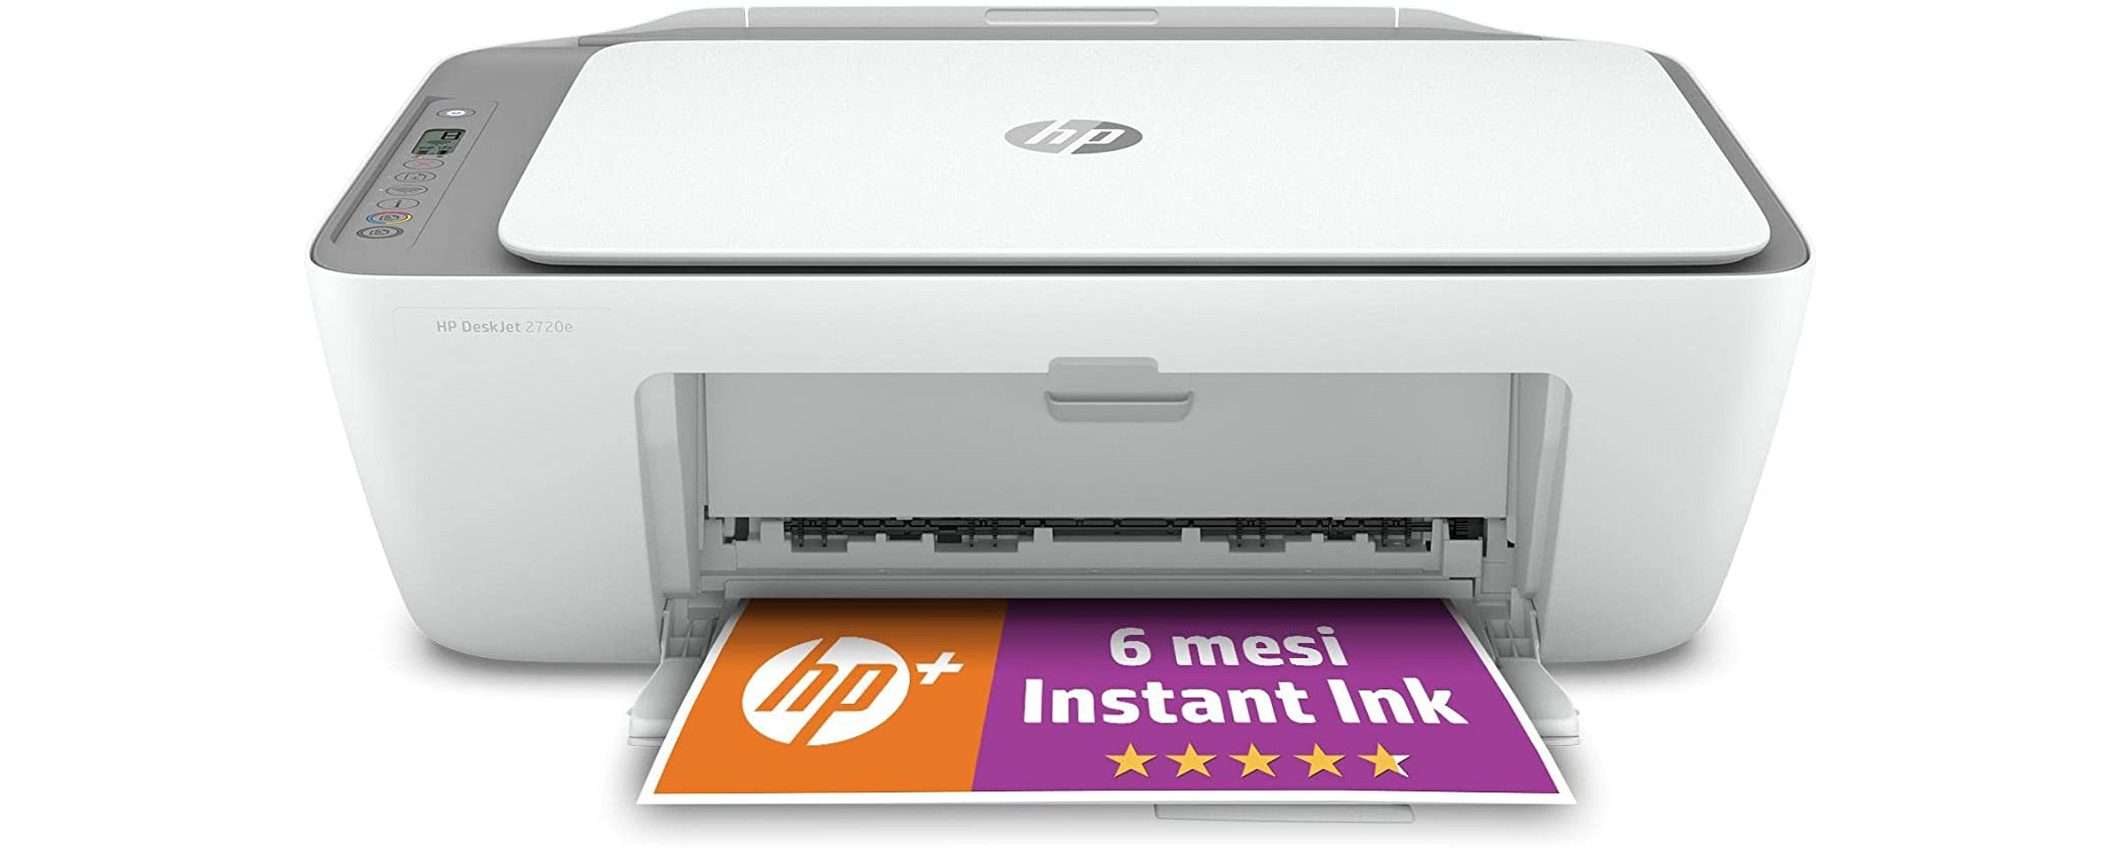 HP DeskJet 2720e: cercate una stampante? A 45€ deve essere vostra!